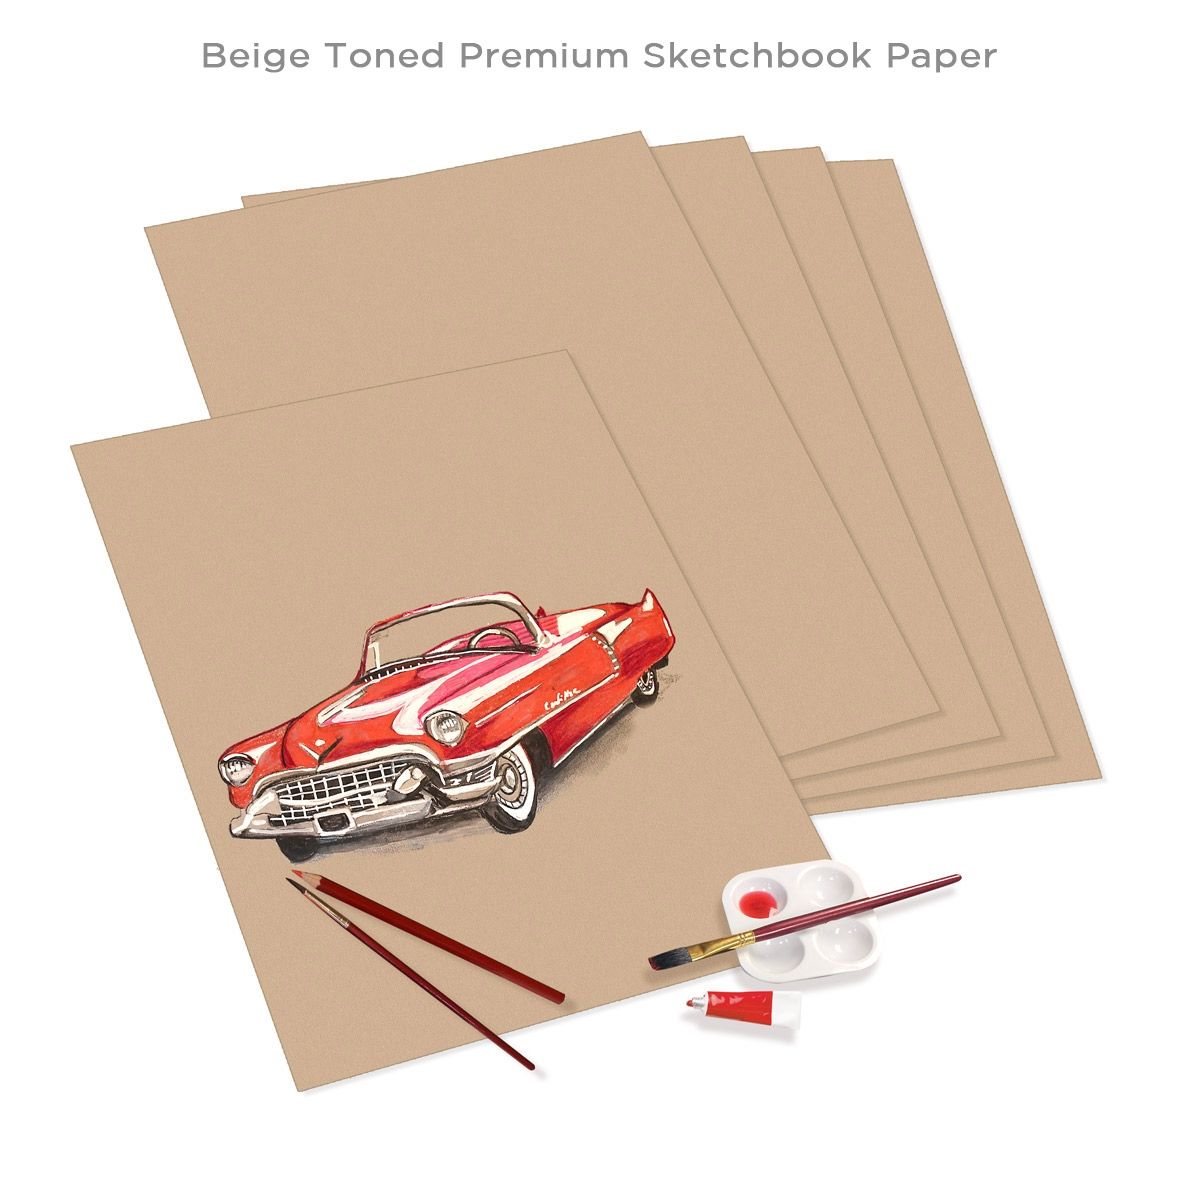 Beige Sketchbook Paper with Art